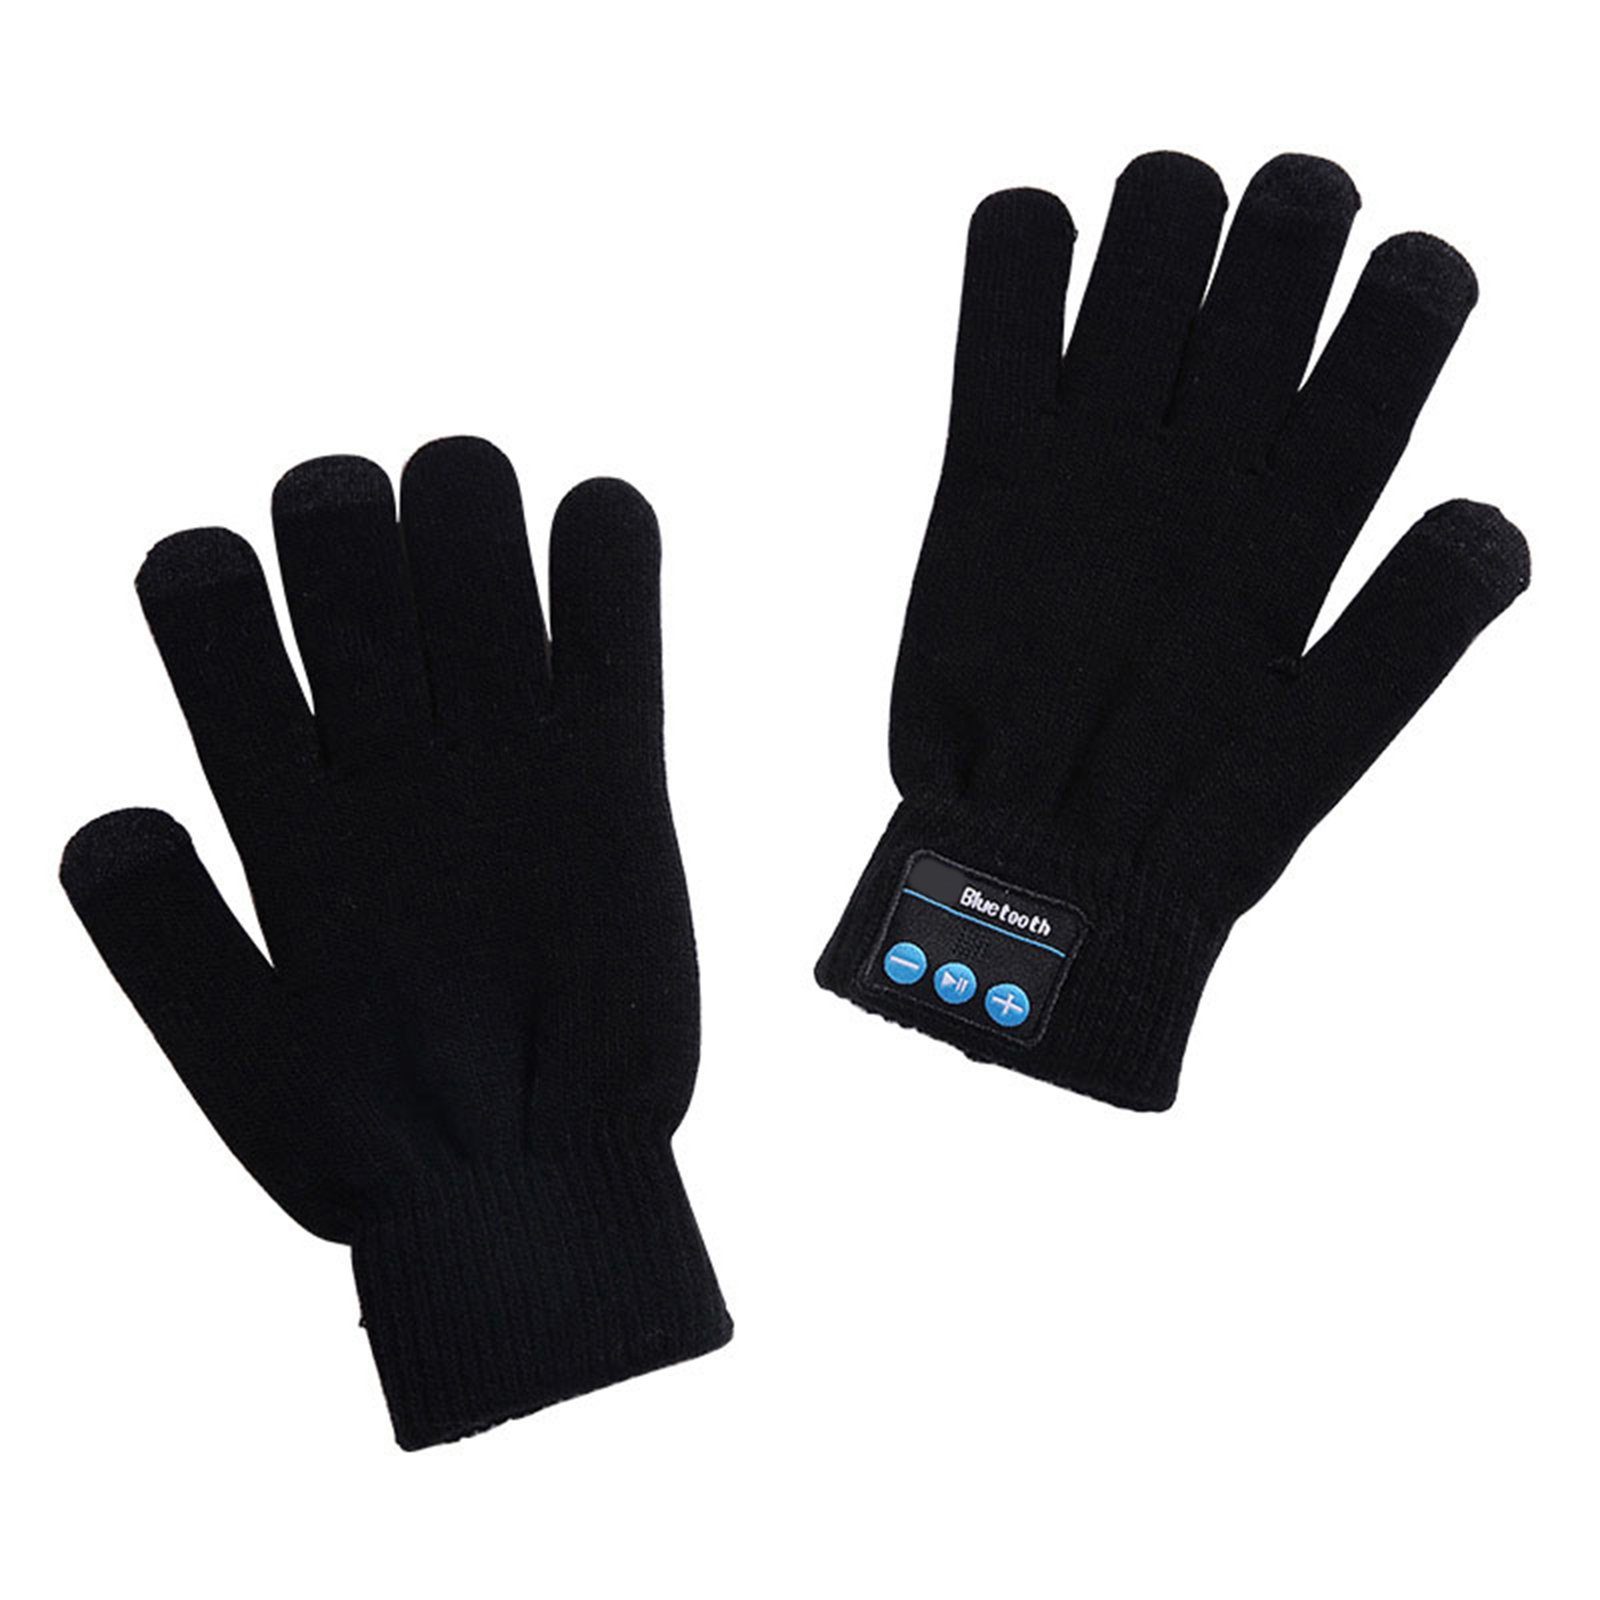 Drahtlose Telefon Screen Blusmart Lautsprecher Handschuhe grau Strickhandschuhe Touch Bluetooth Warm